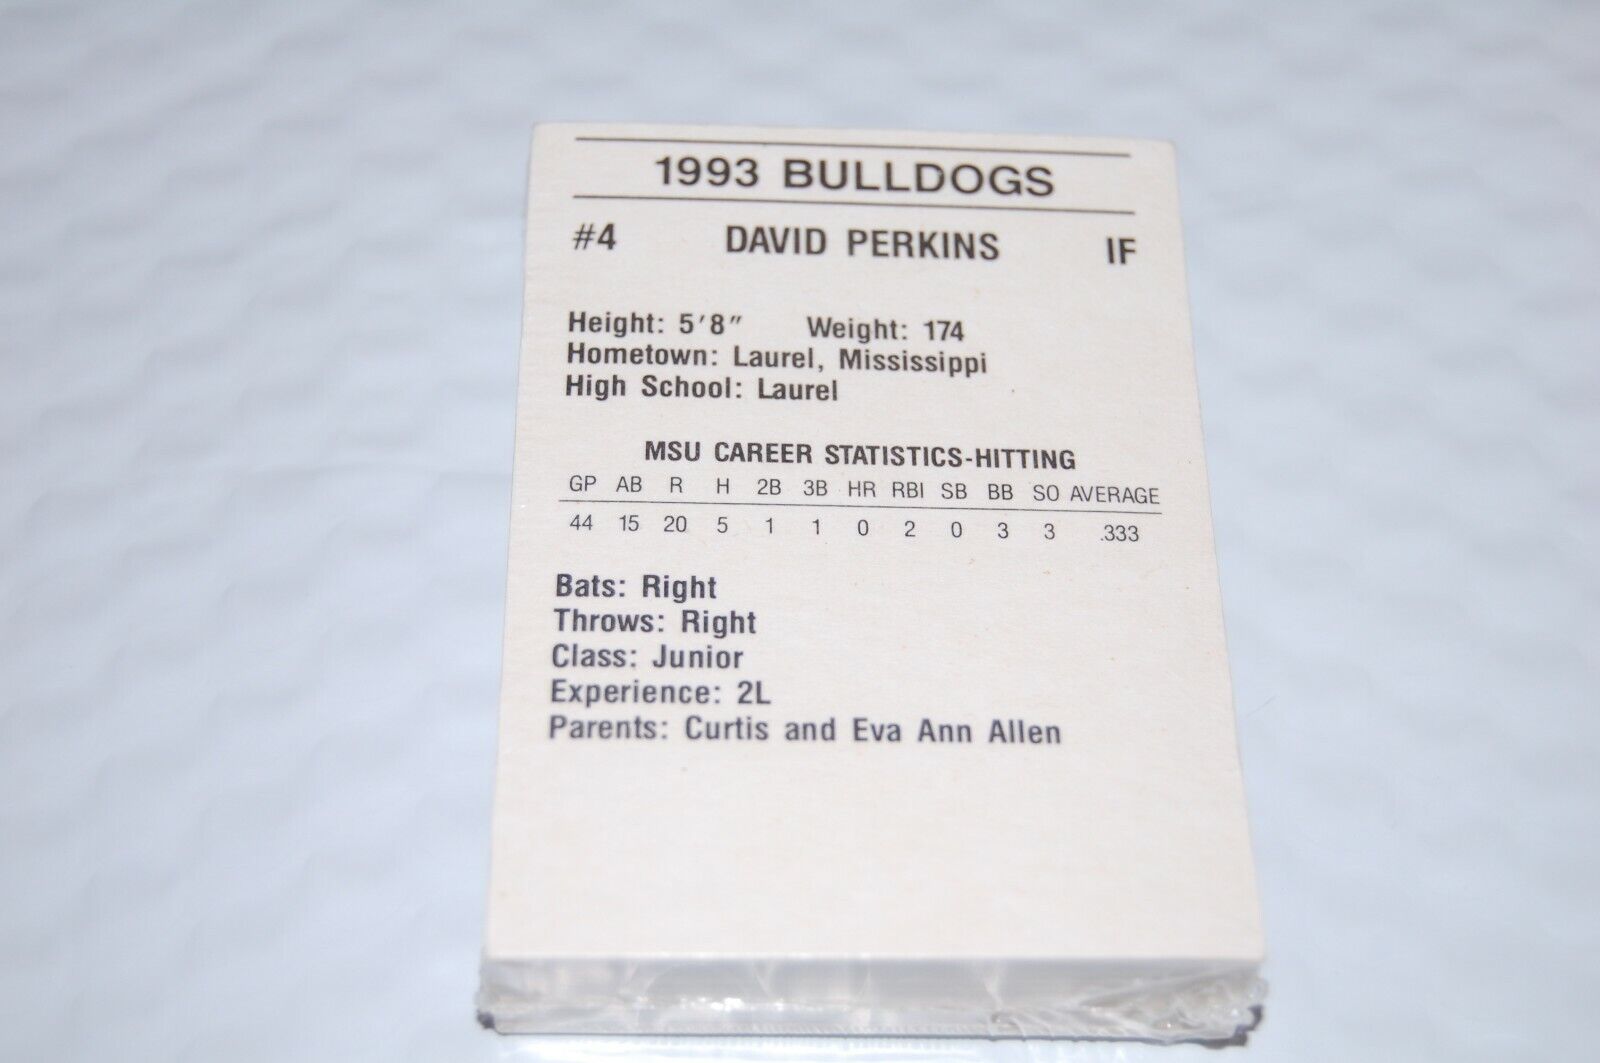 1993 Mississippi State Bulldogs Baseball Cards TEAM SET - Brand New - Sealed